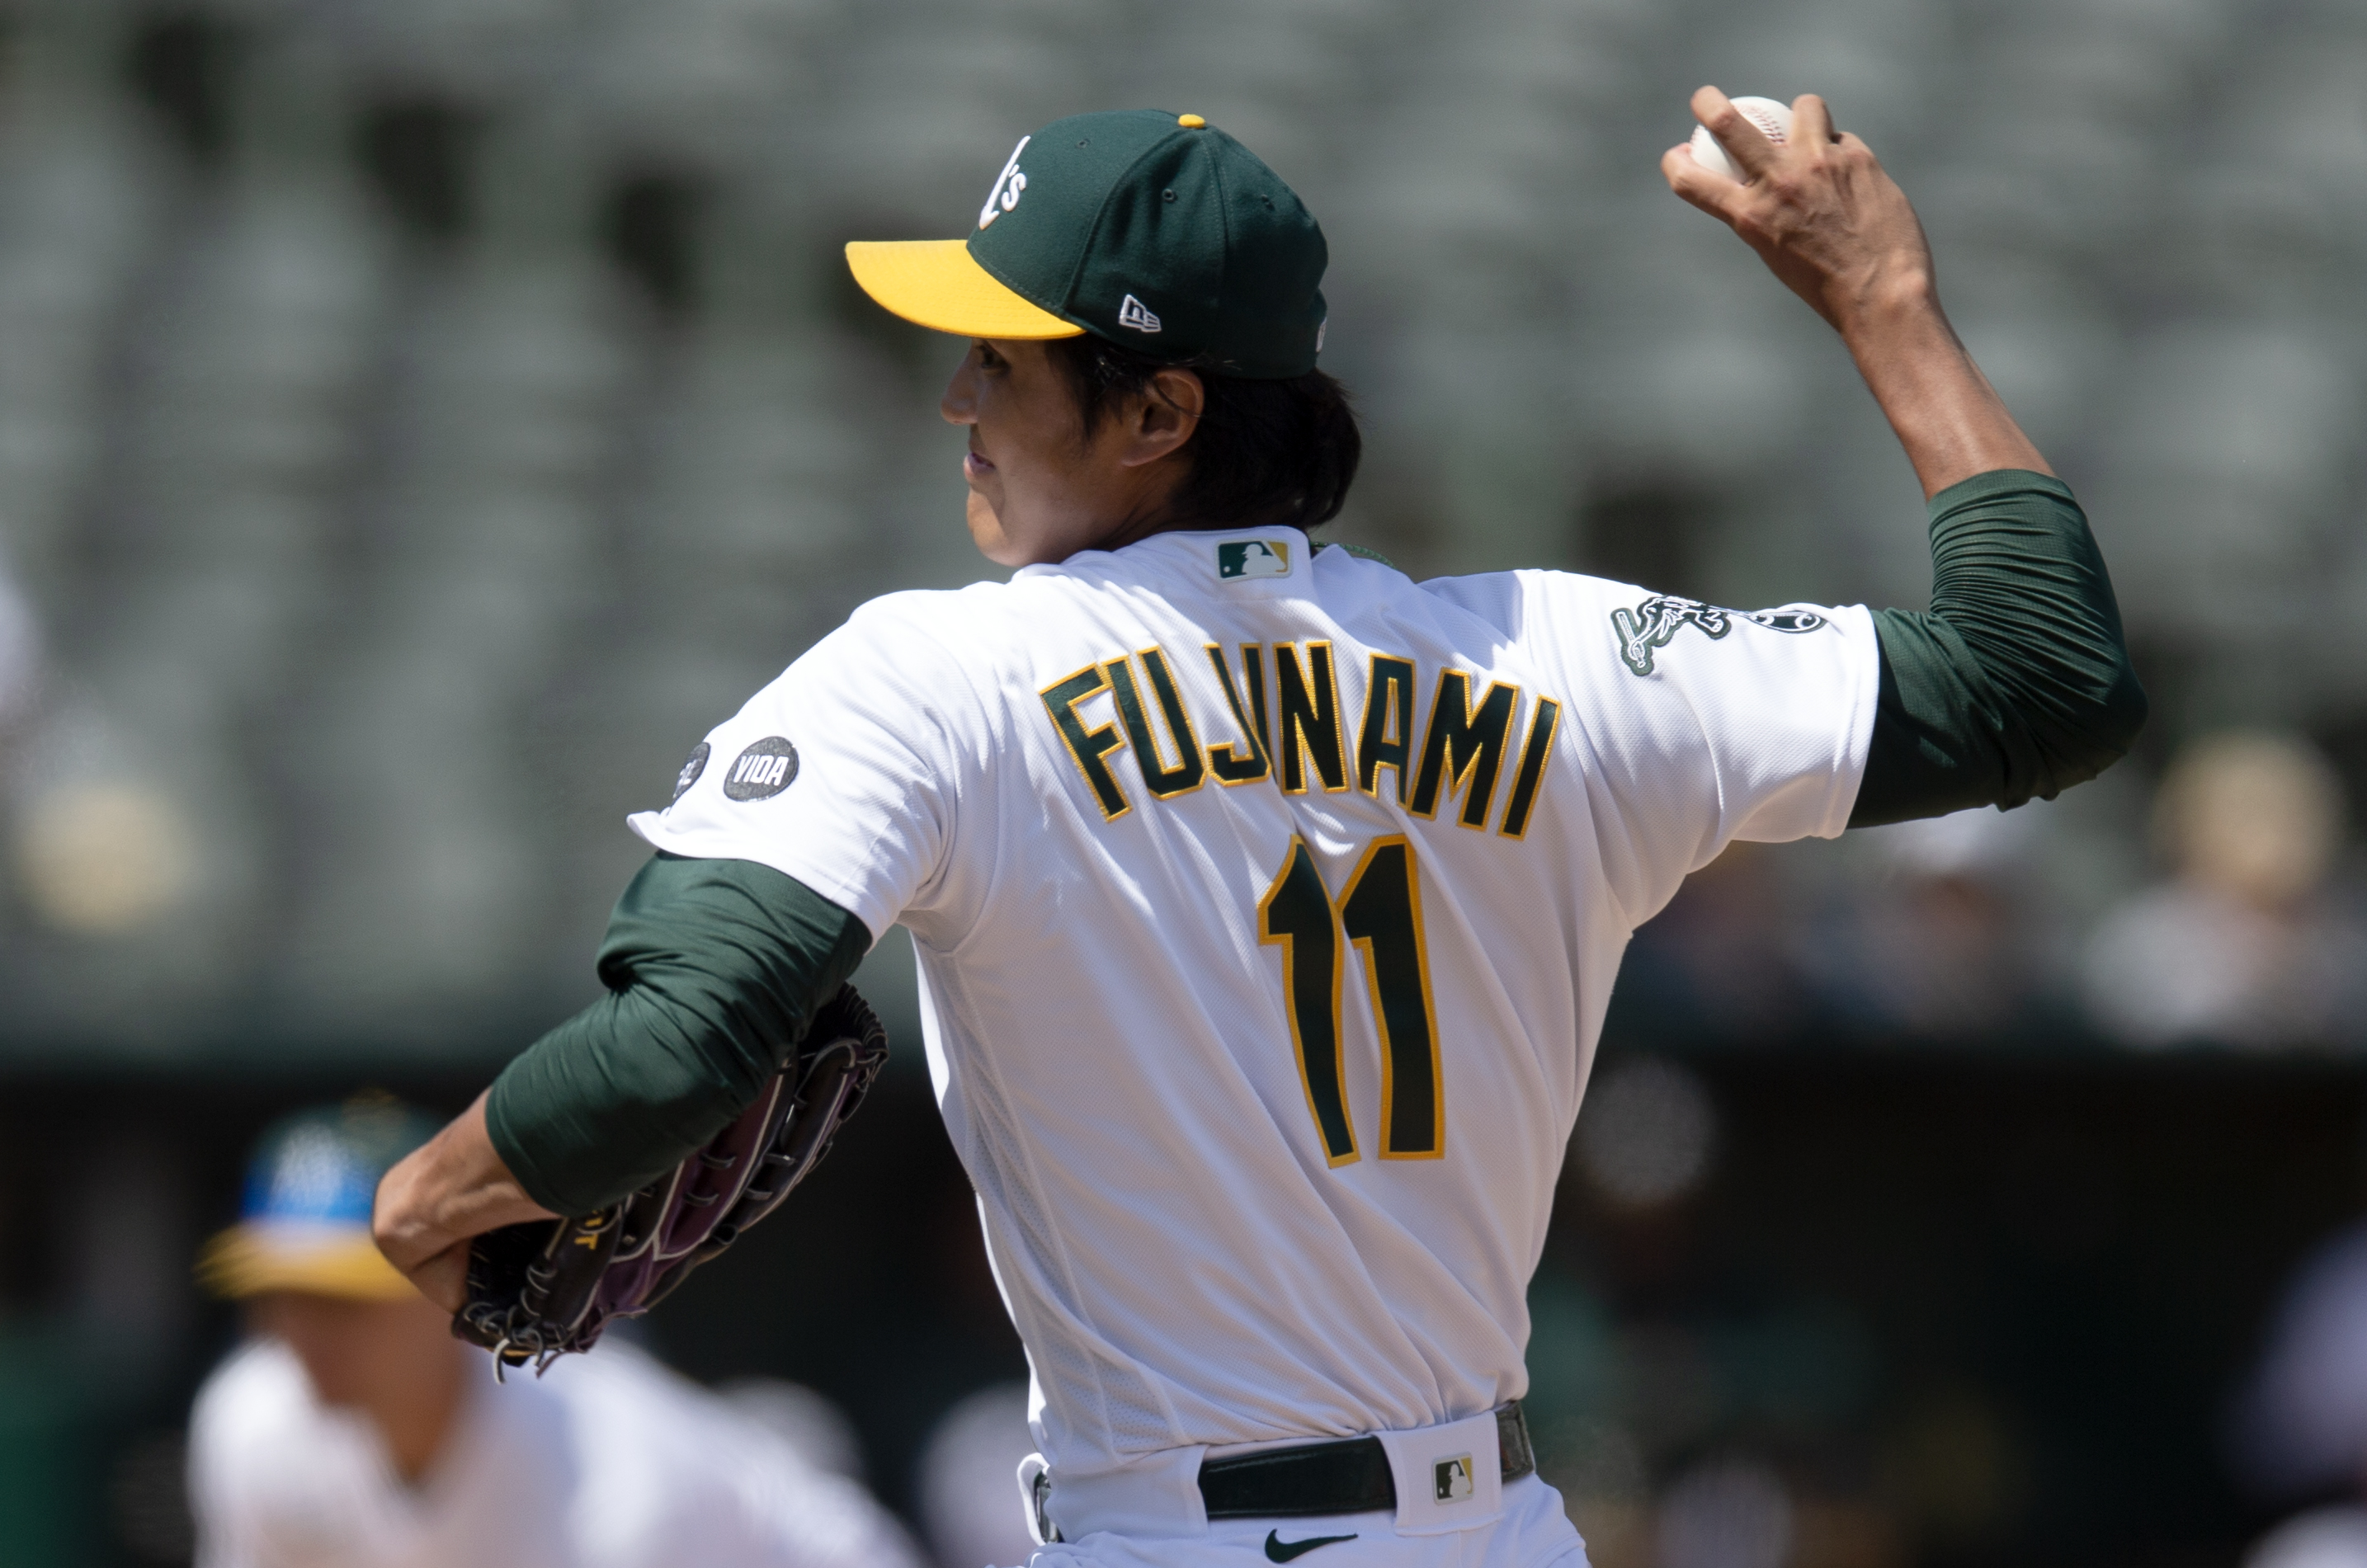 Shintaro Fujinami's mom takes in son's first MLB start in